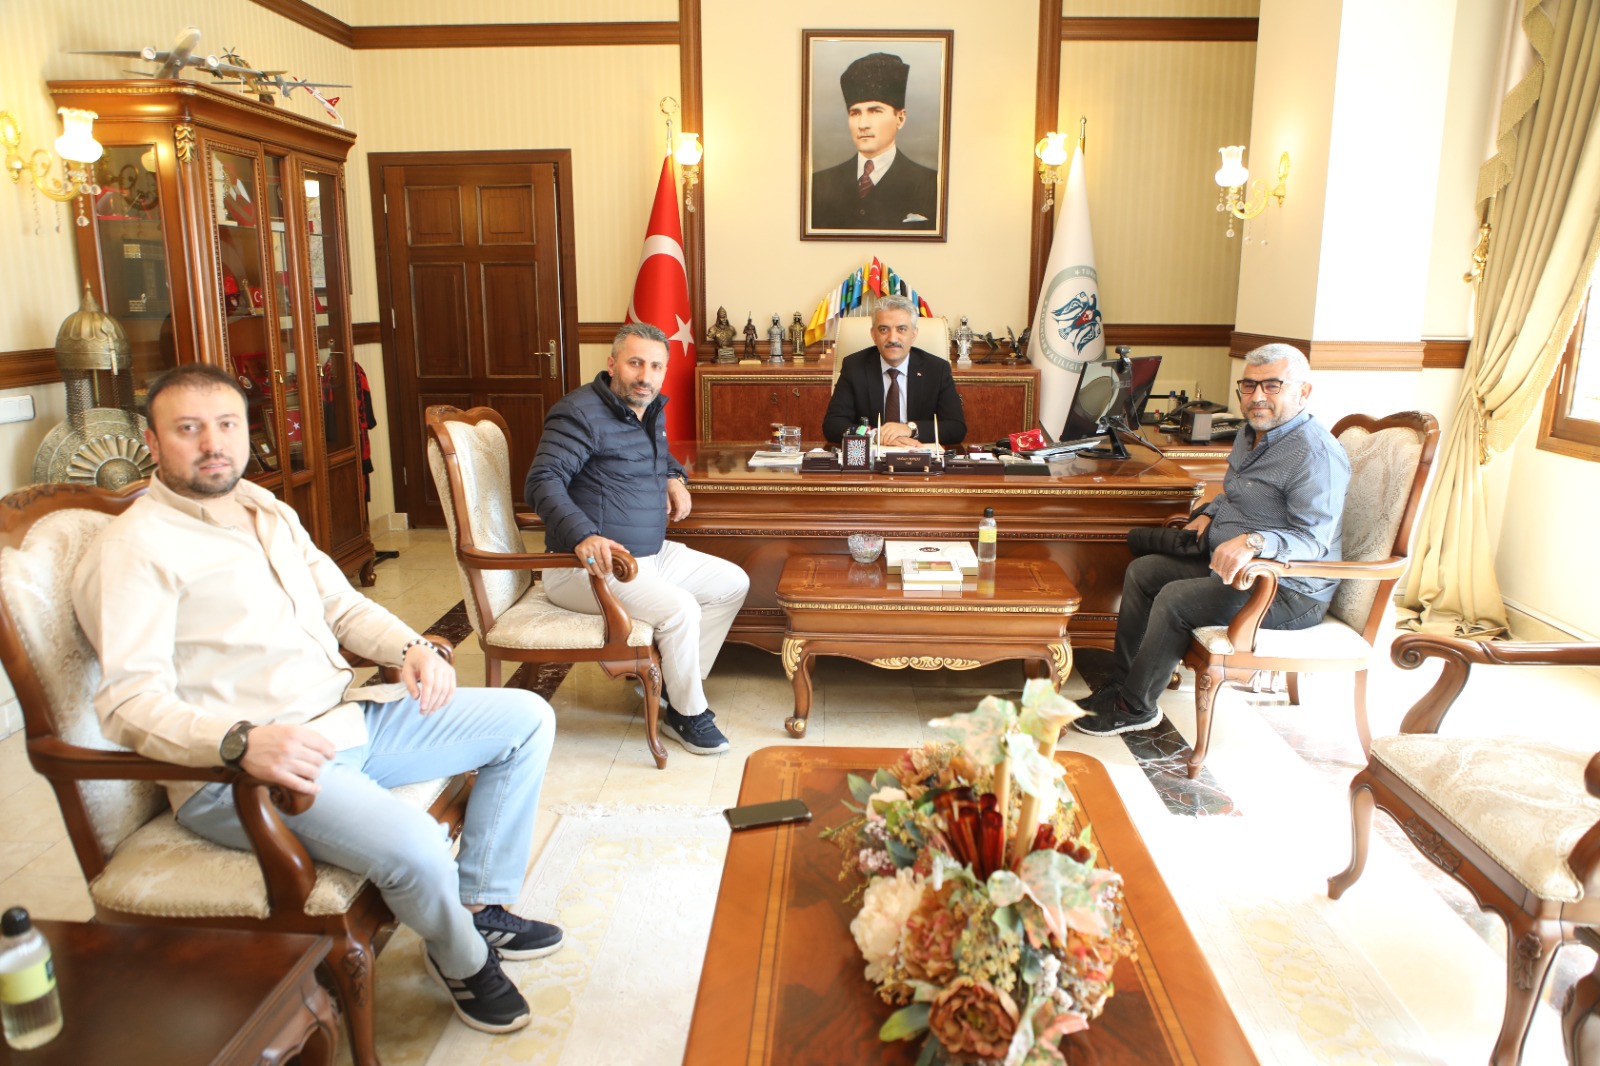 Sayın Erzincan Valisi, Misafirlerini Kabul Etti (25.05.2022)